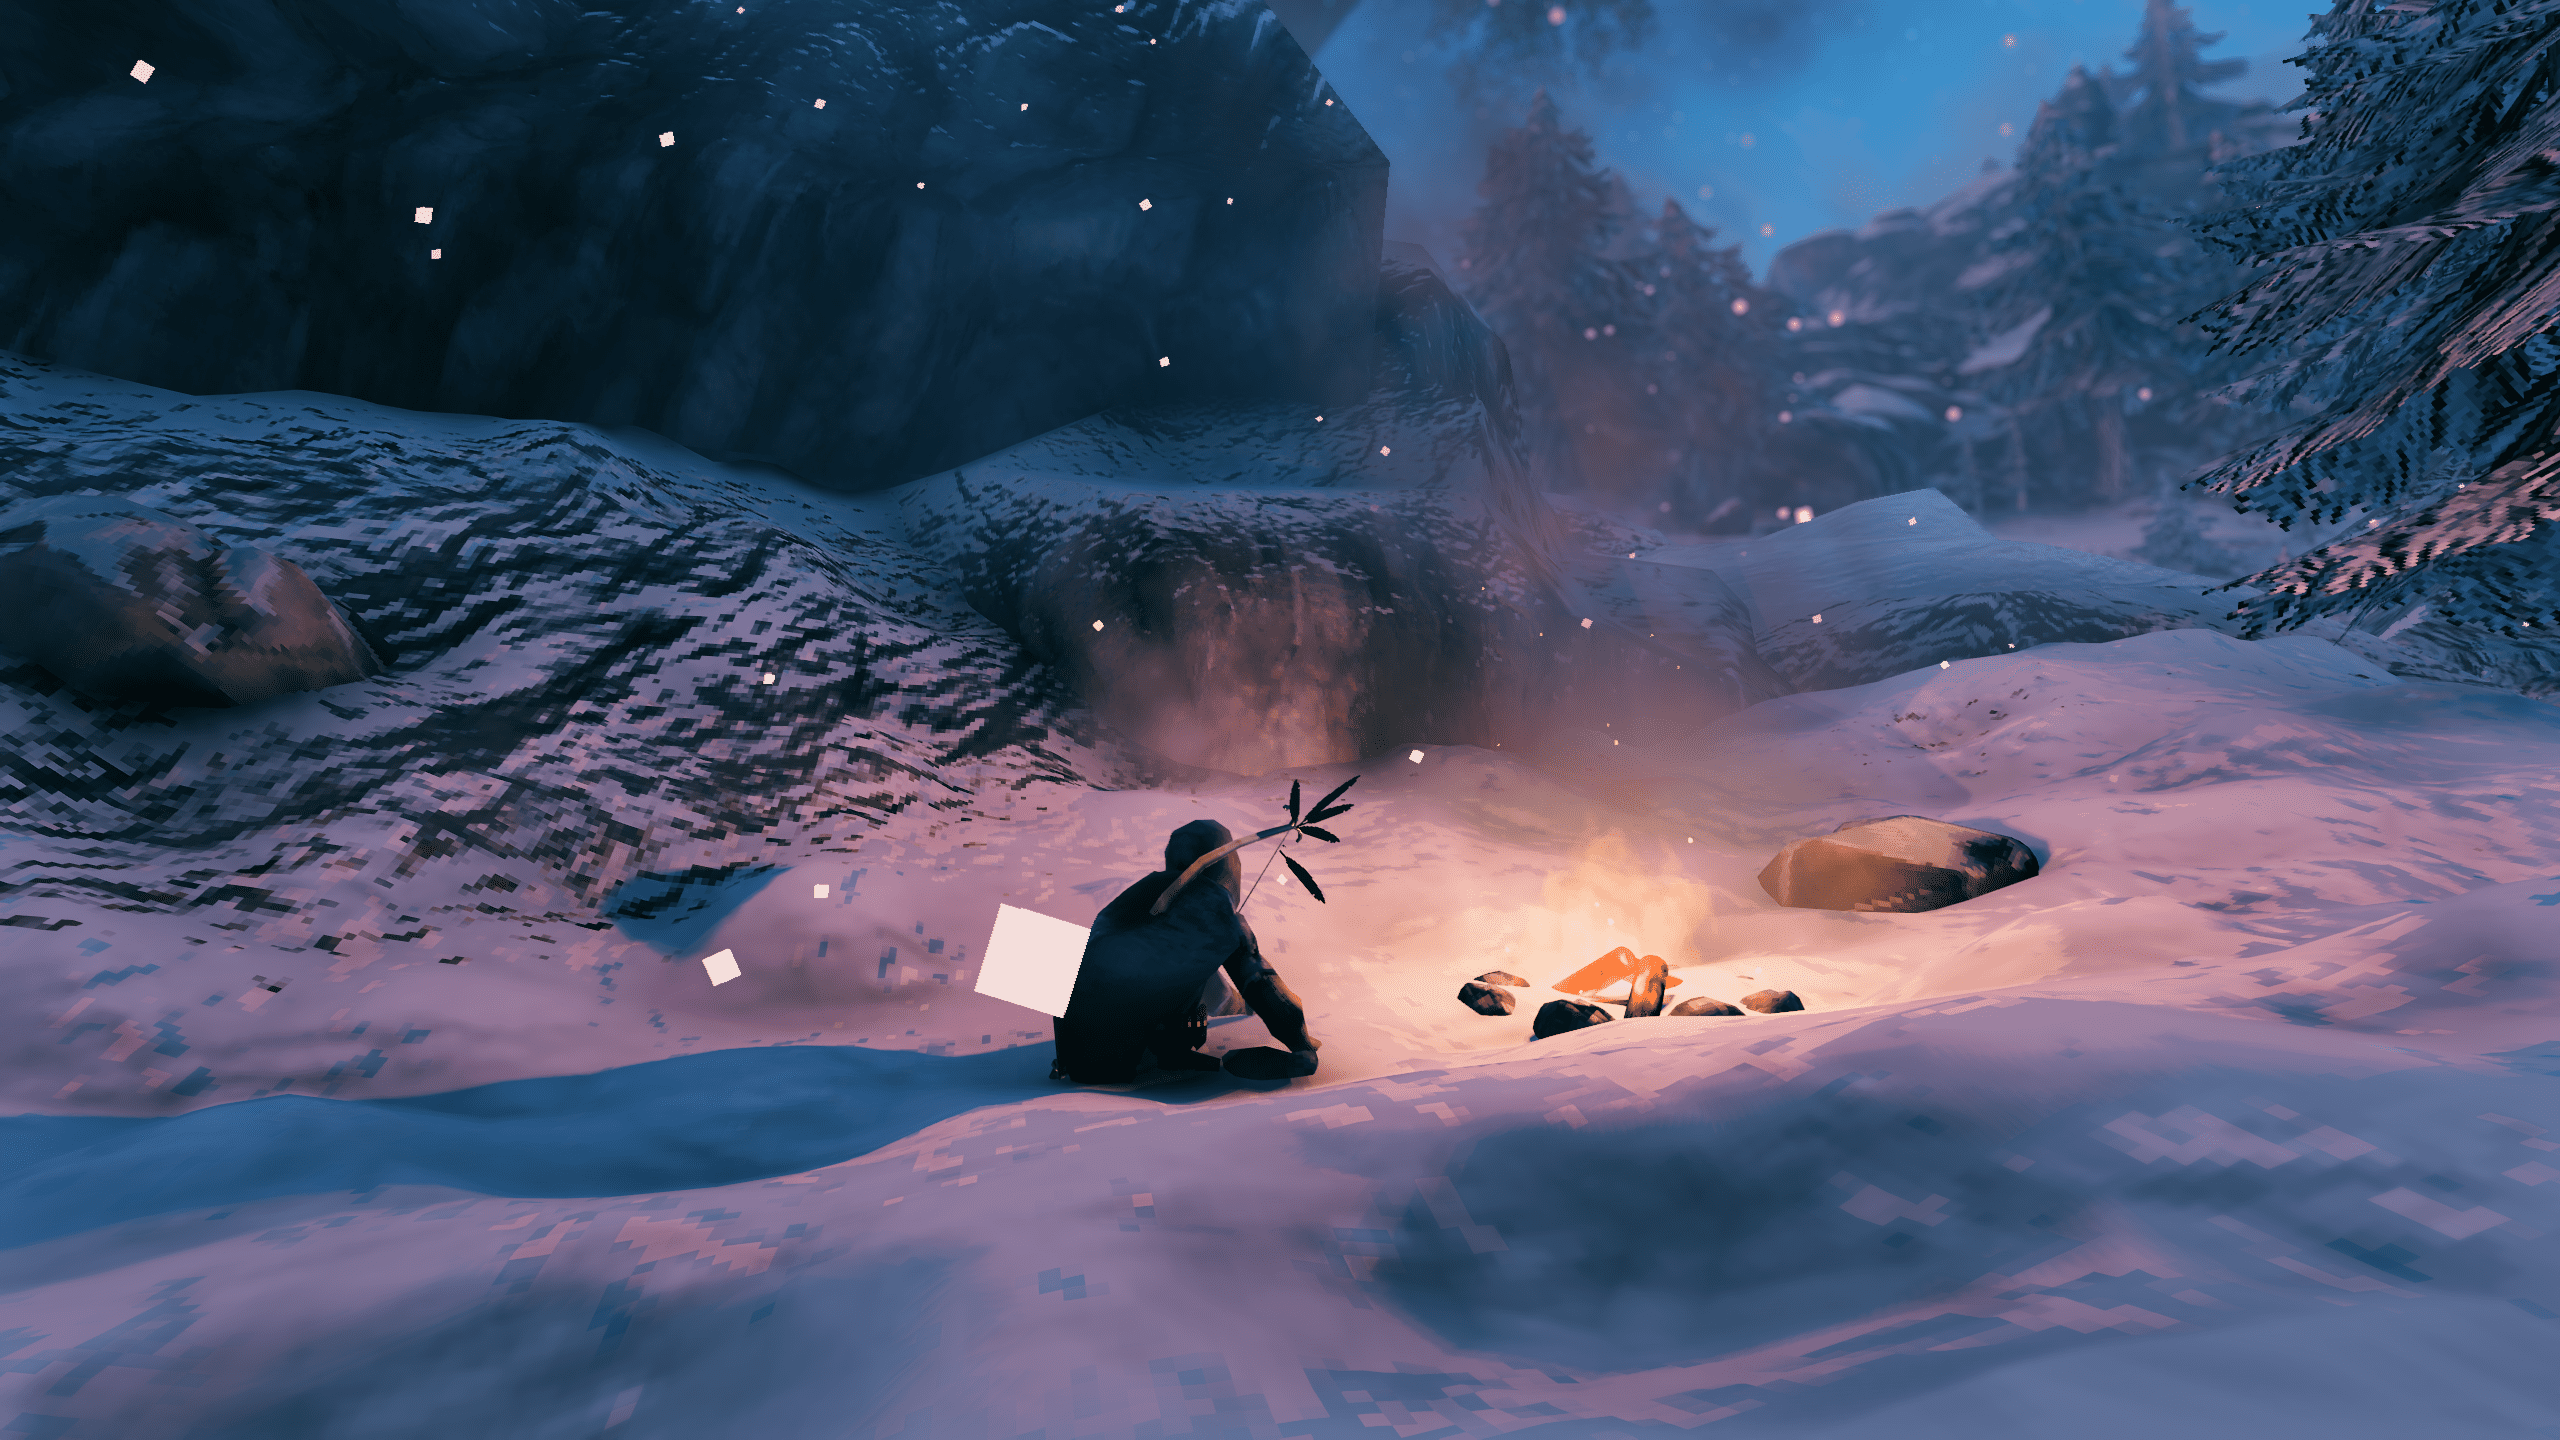 Personagem de Valheim descansando em uma fogueira na neve